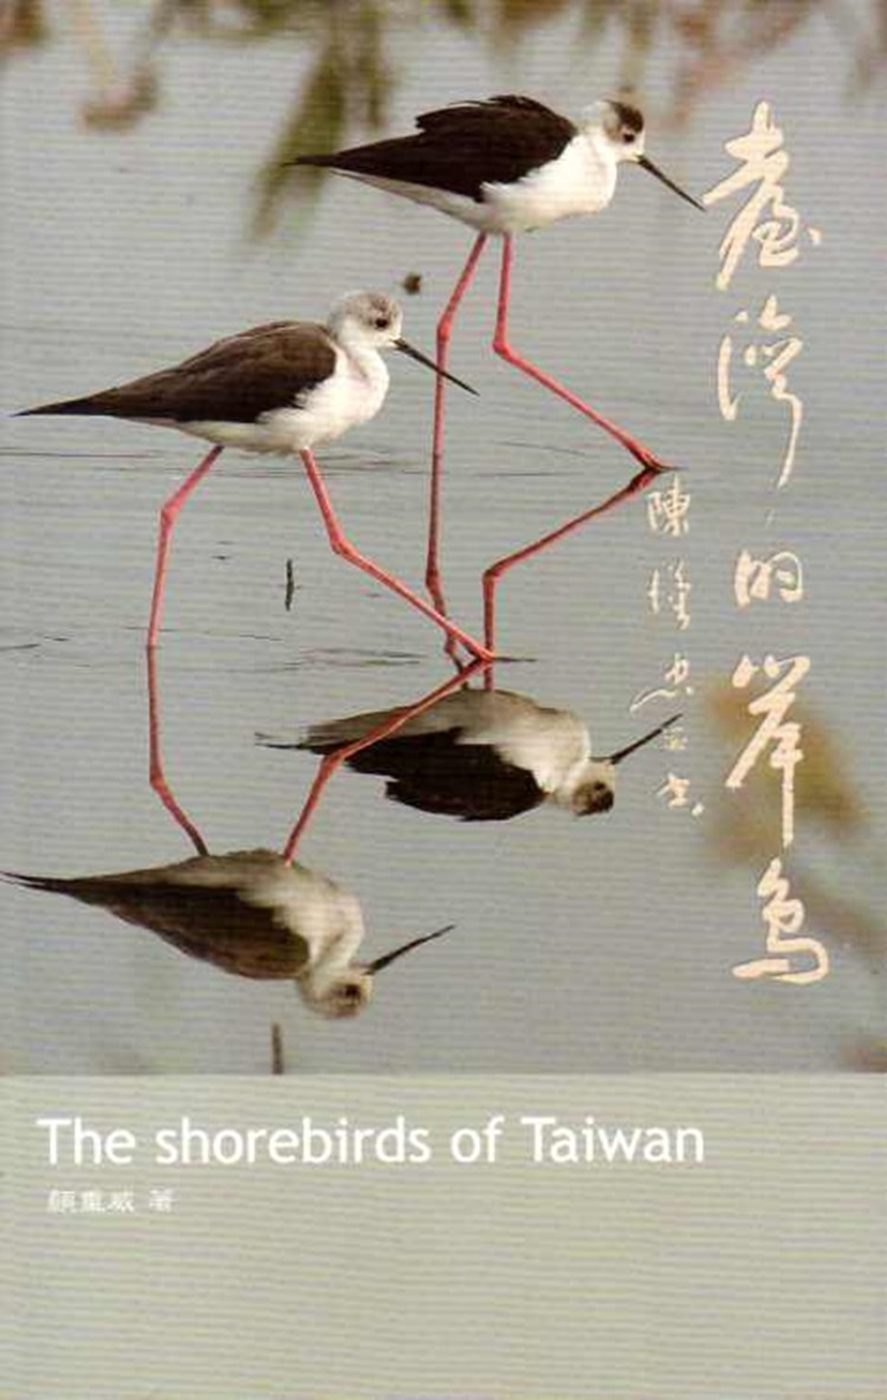 臺灣的岸鳥